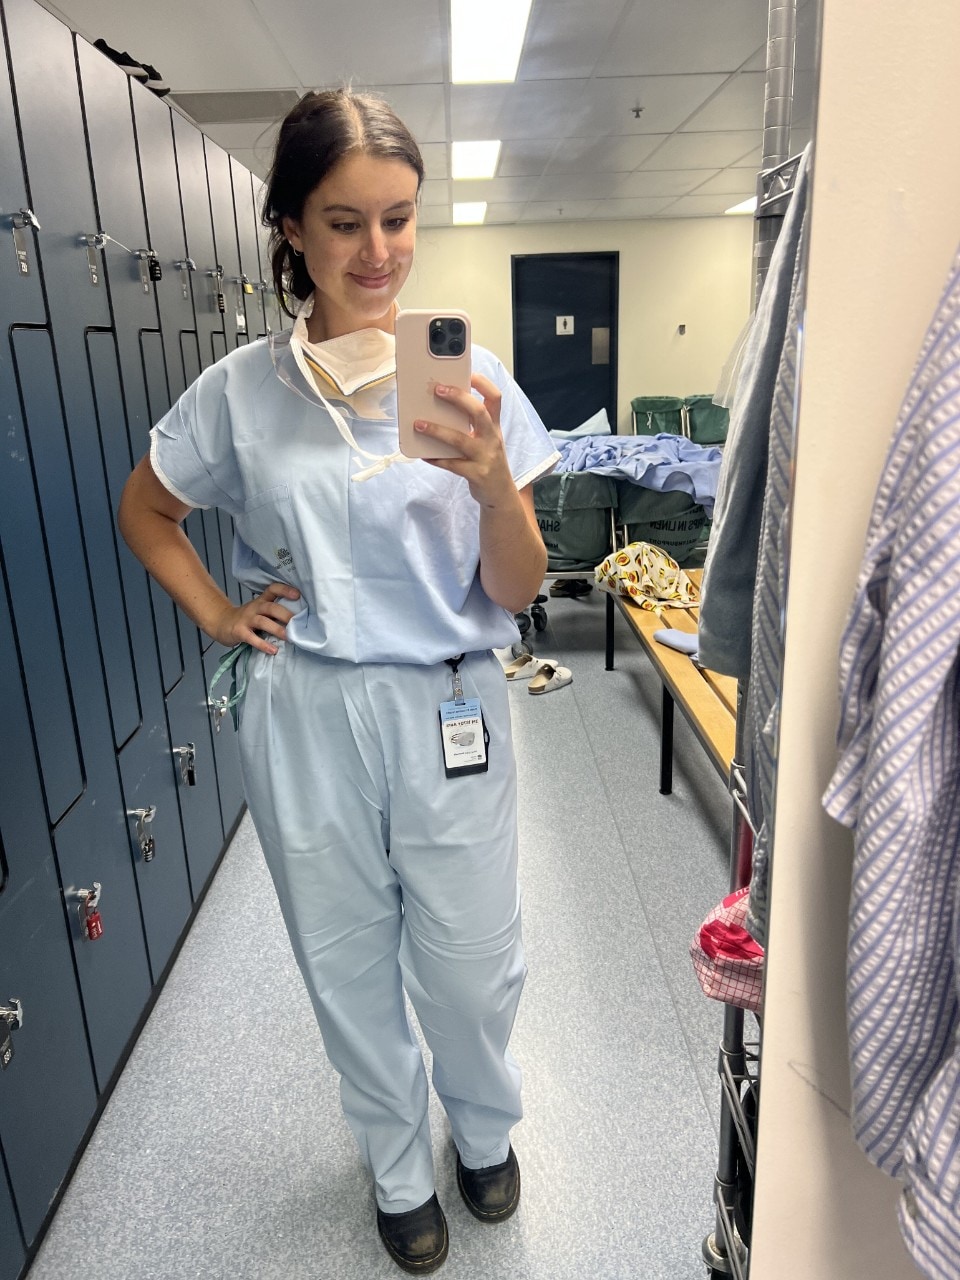 Maddi Eveleigh in her hospital scrubs